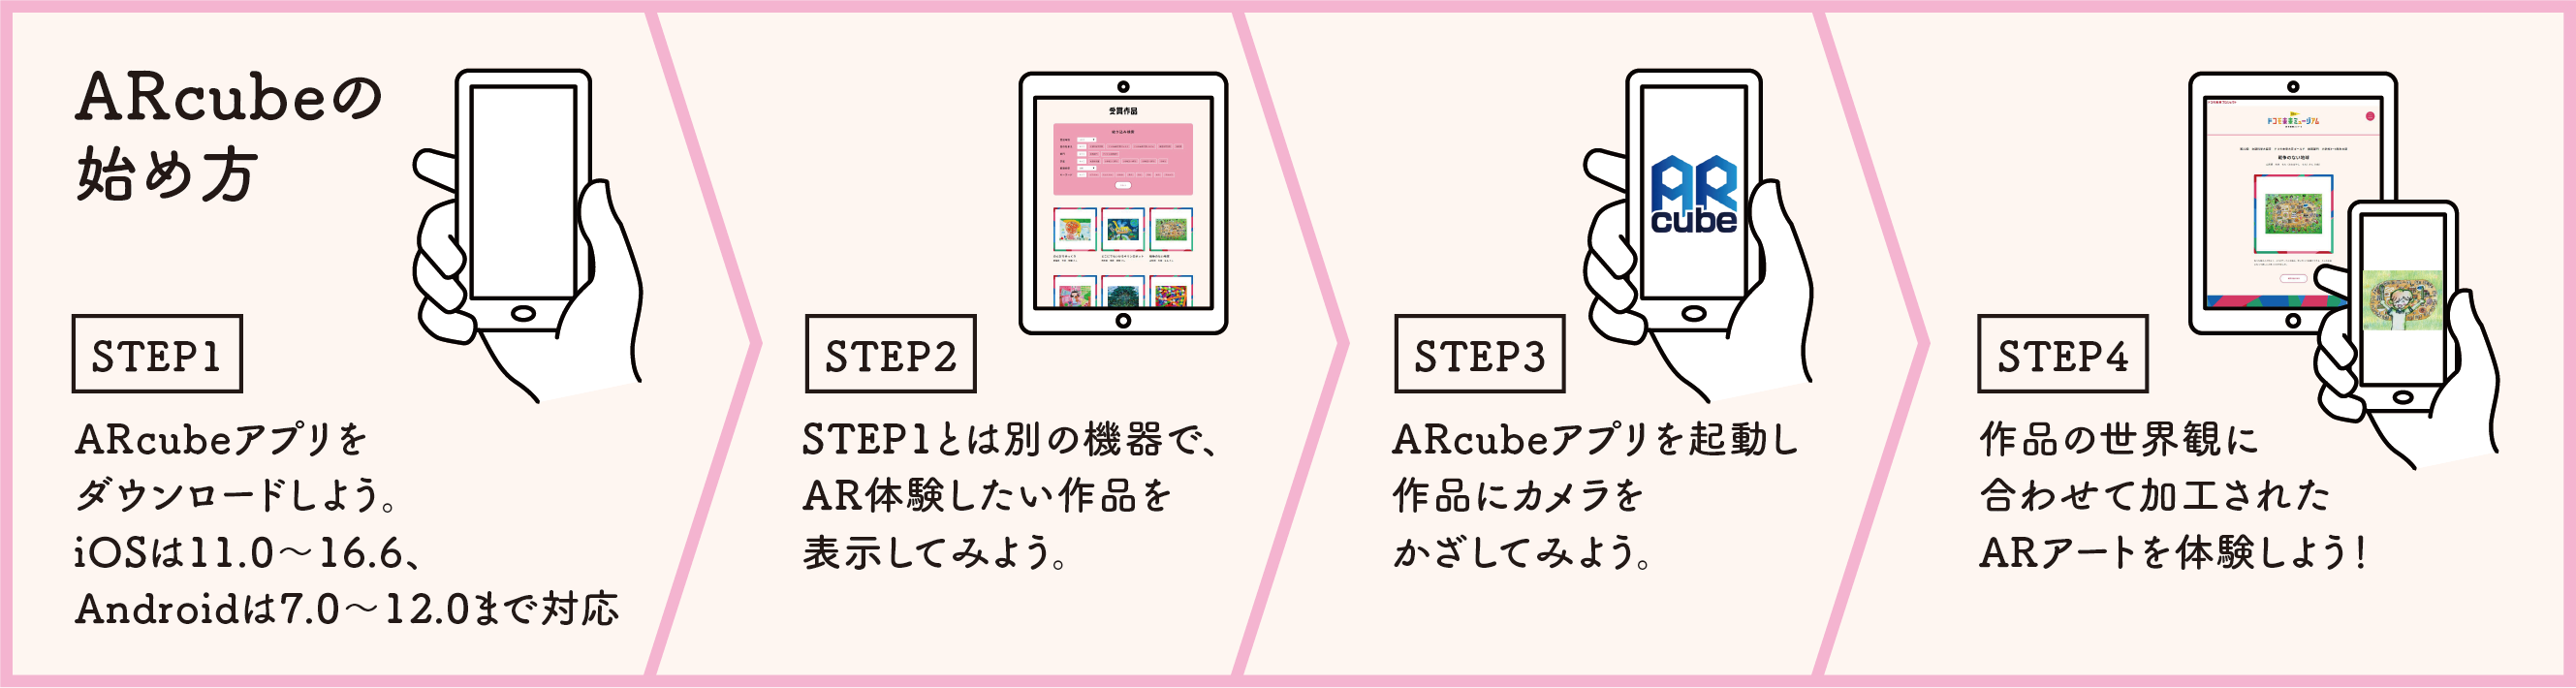 ARcubeの始め方 [STEP1]ARcubeアプリをダウンロードしよう。iOSは11.0～16.6、Androidは7.0～12.0まで対応 [STEP2]STEP1とは別の機器で、AR体験したい作品を表示してみよう。 [STEP3]ARcubeアプリを起動し作品にカメラをかざしてみよう。 [STEP4]作品の世界観に合わせて加工されたARアートを体験しよう！